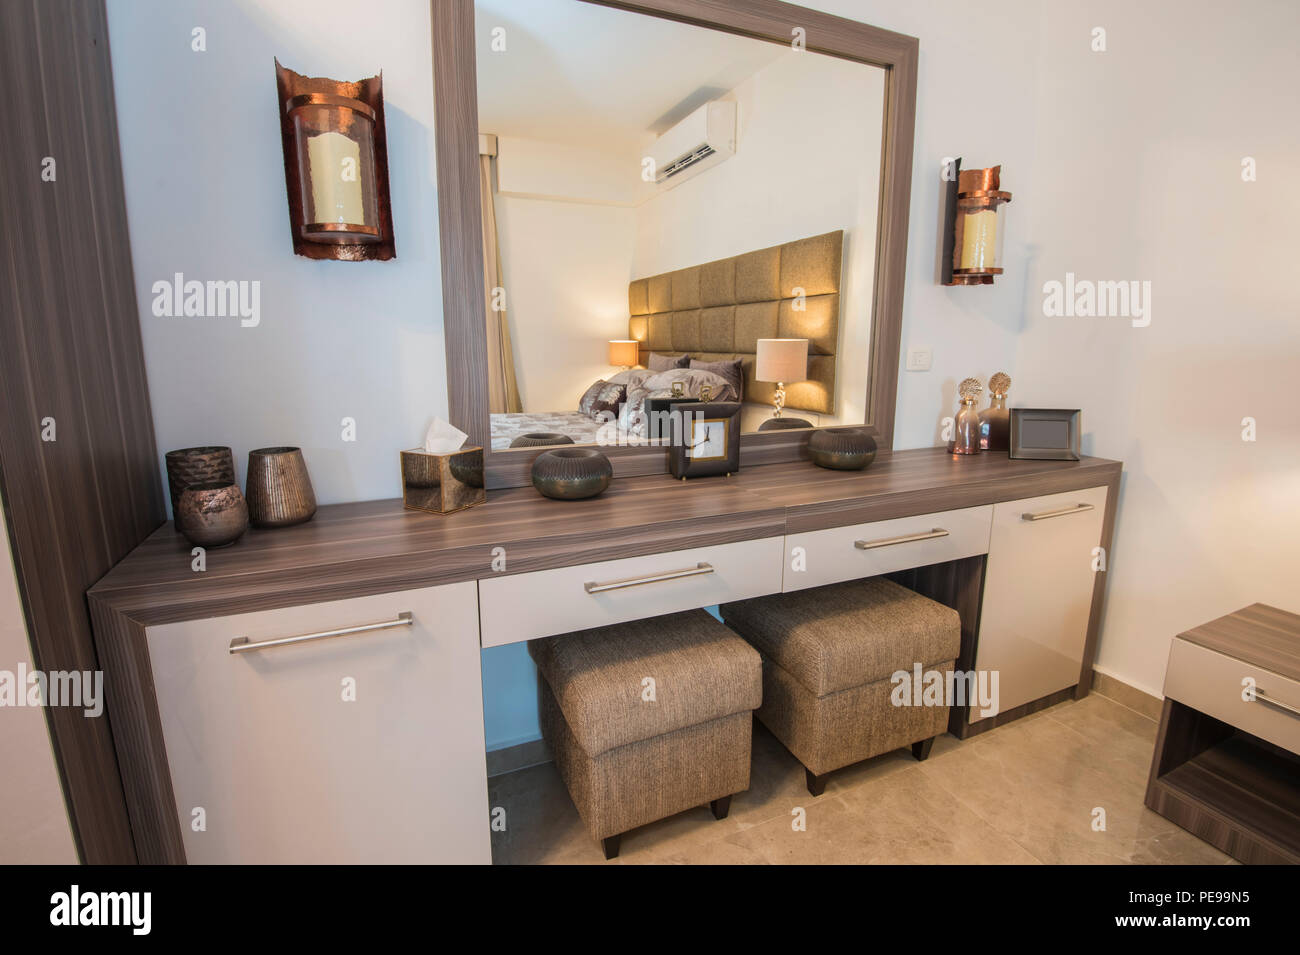 Interior Design Einrichtung Einrichtung von Luxus zeigen home Schlafzimmer  mit Schminktisch und Doppelbett Stockfotografie - Alamy